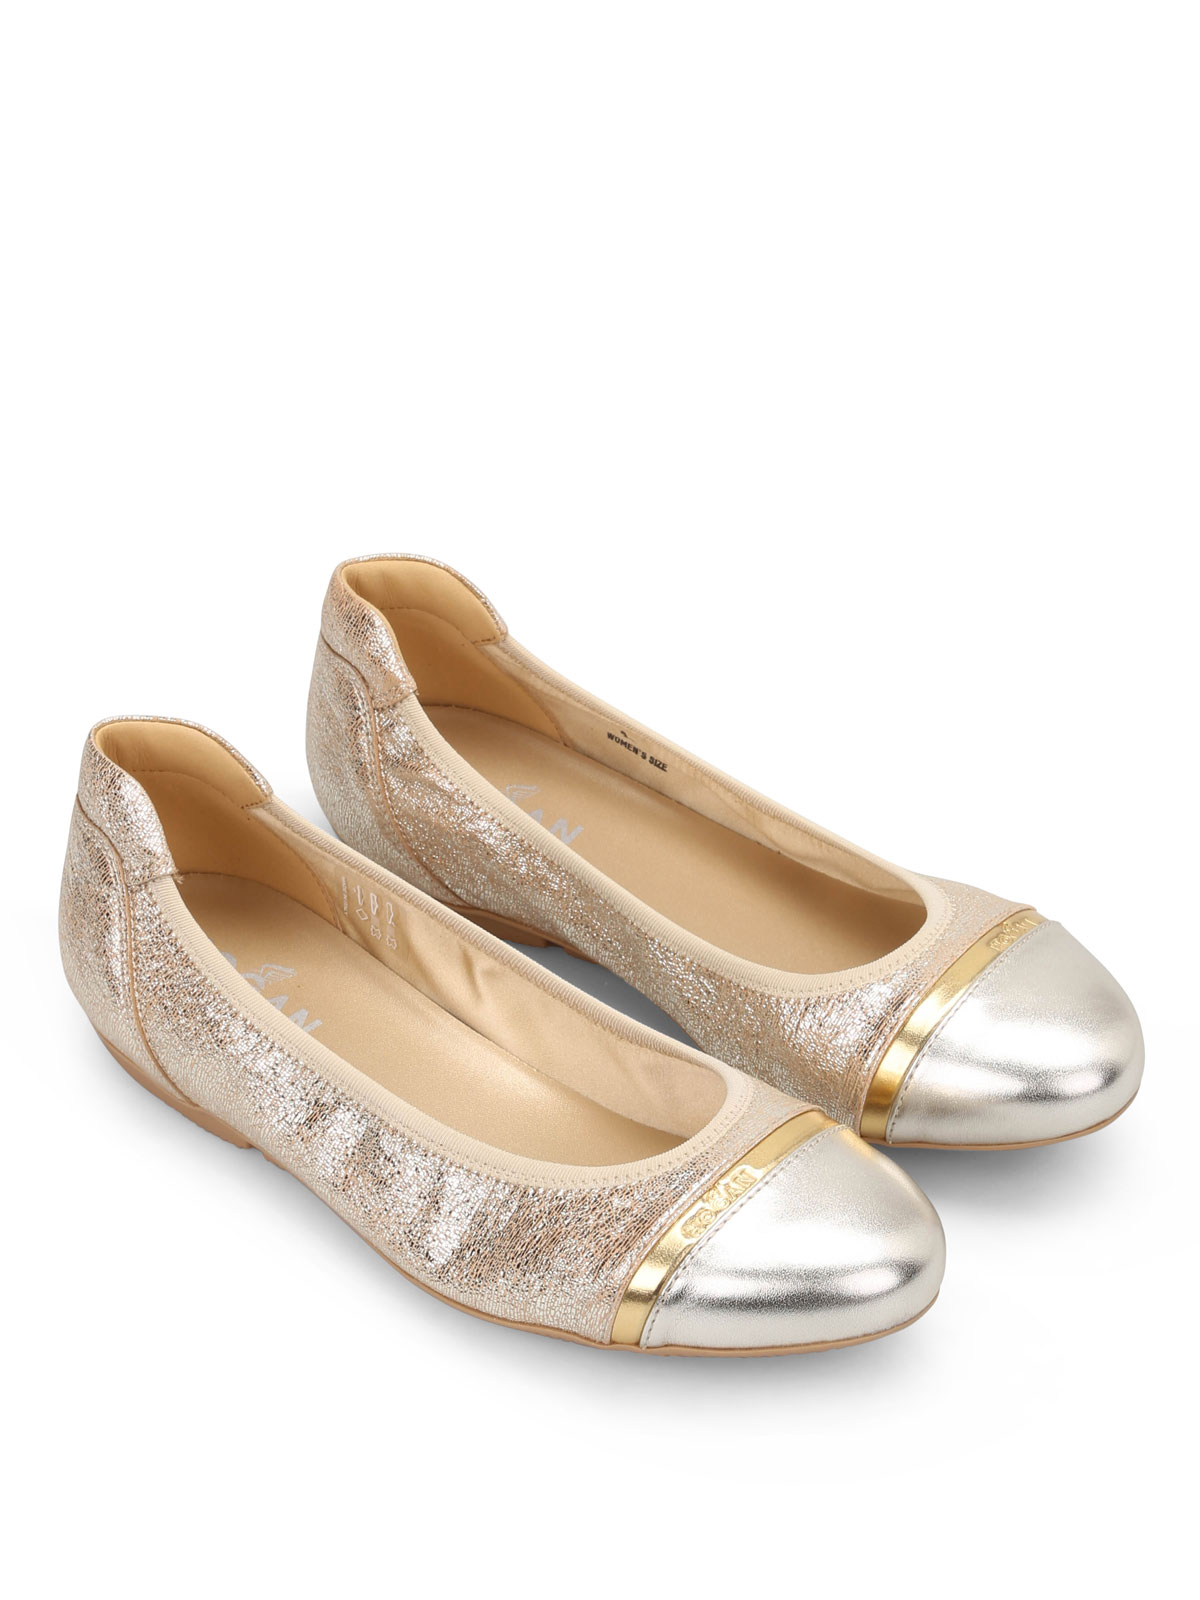 Prestatie legering rijstwijn Flat shoes Hogan - Wrap 144 Ballerinas - HXW14407124BXW3710 | iKRIX.com